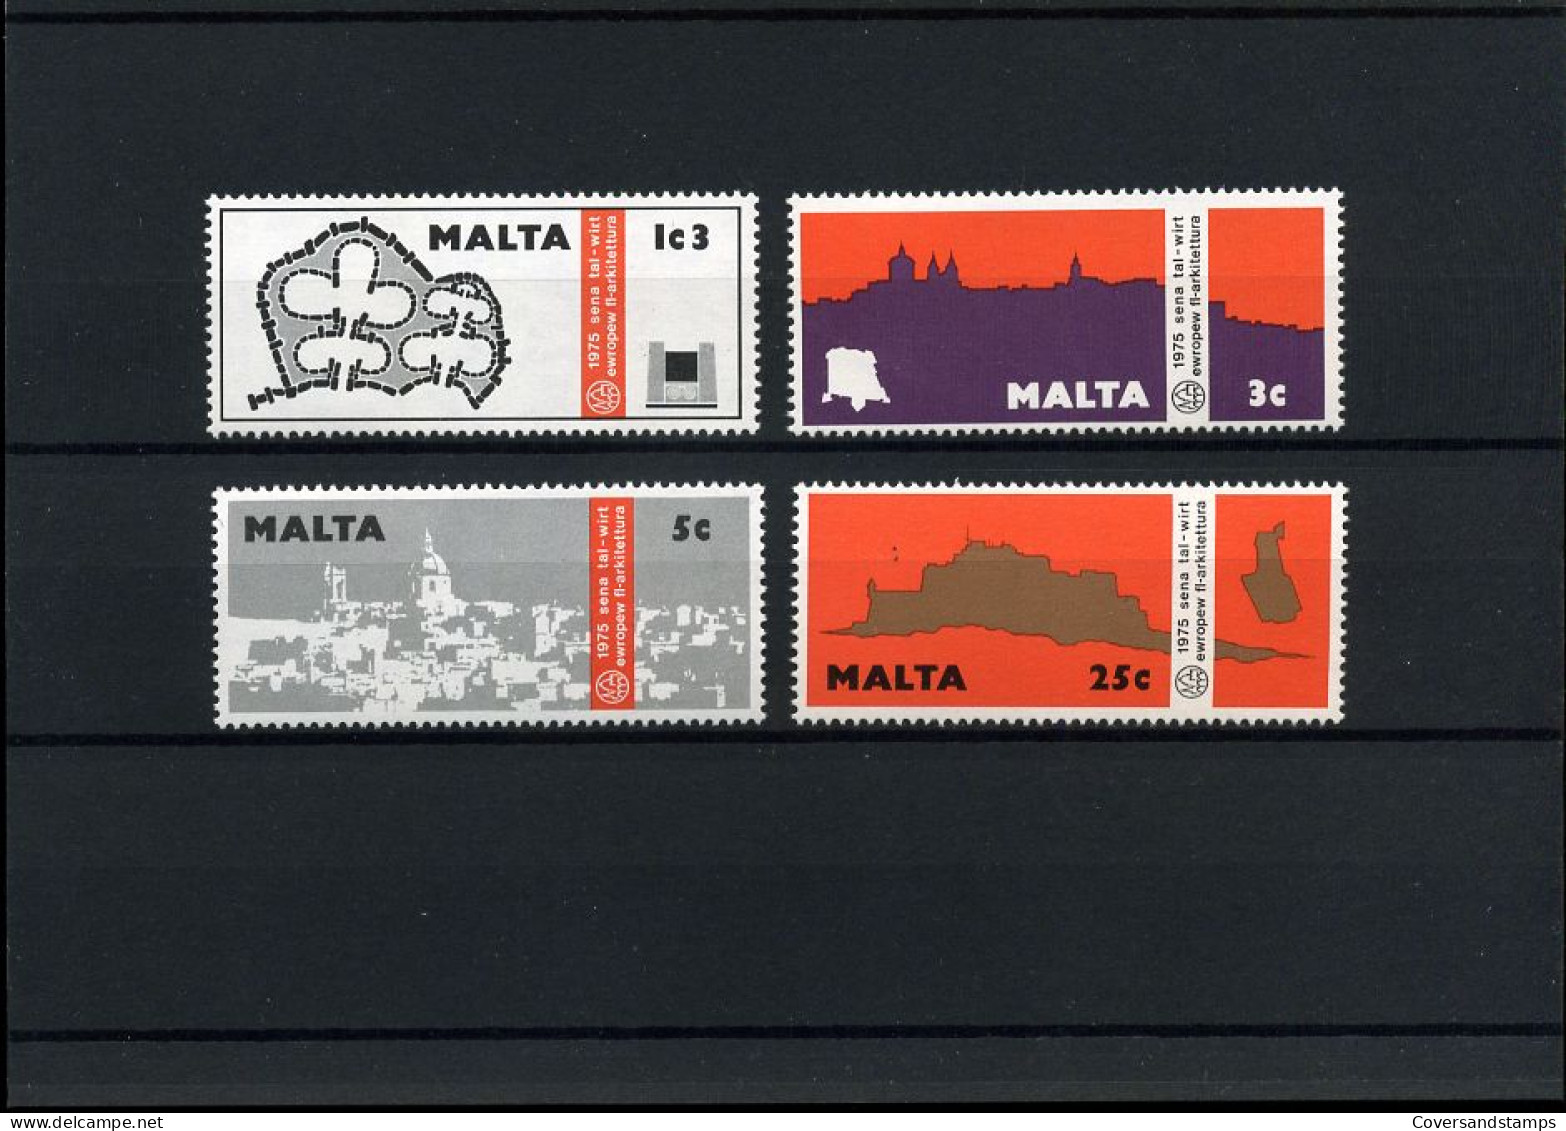 Malta - MNH - European Ideas